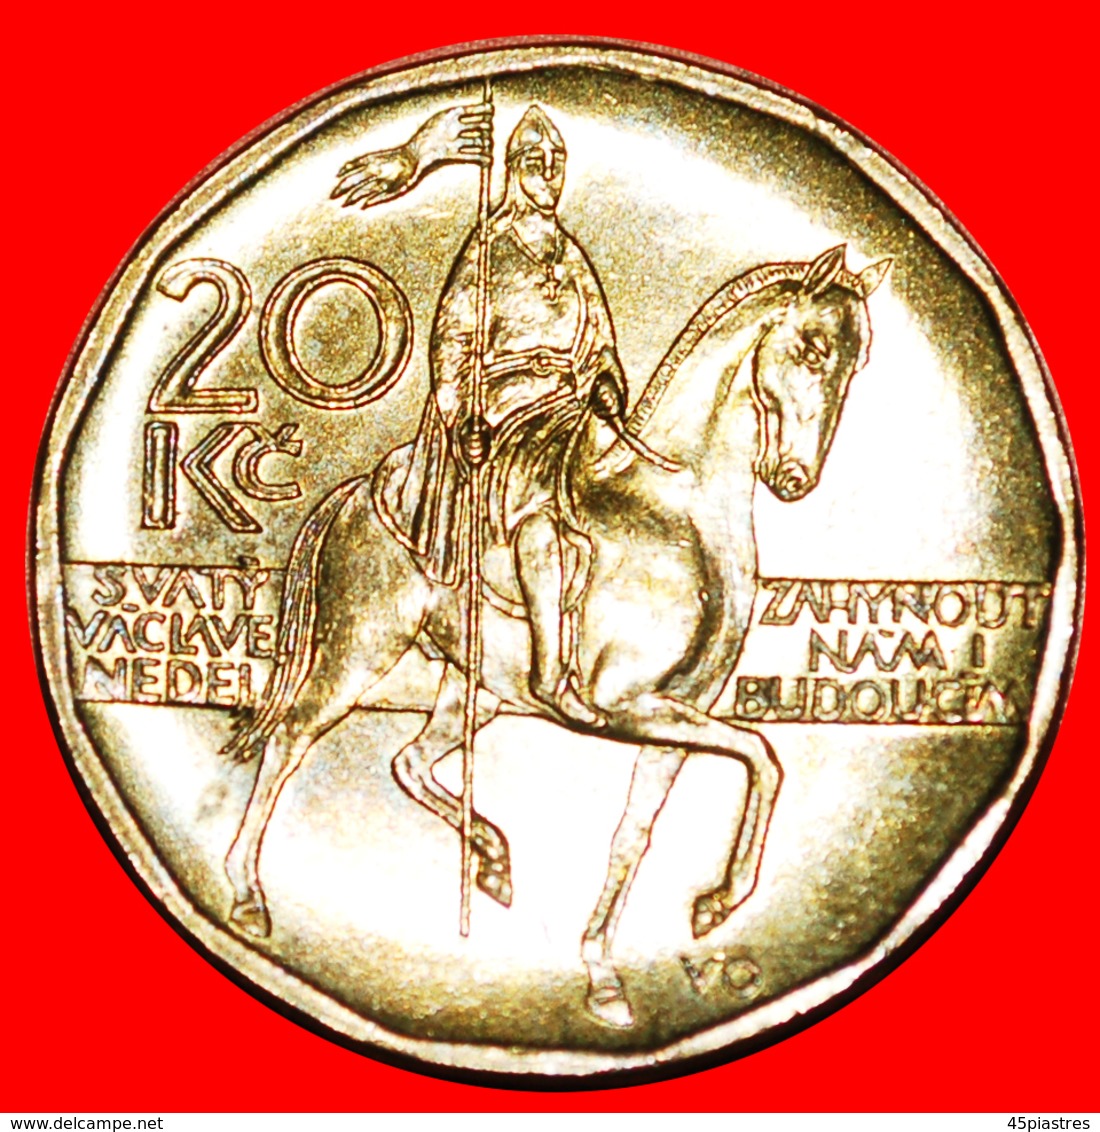 # WENCESLAUS I (907-935): CZECH REPUBLIC ★ 20 KORUN 1997 MINT LUSTER! LOW START ★ NO RESERVE! - Tchéquie